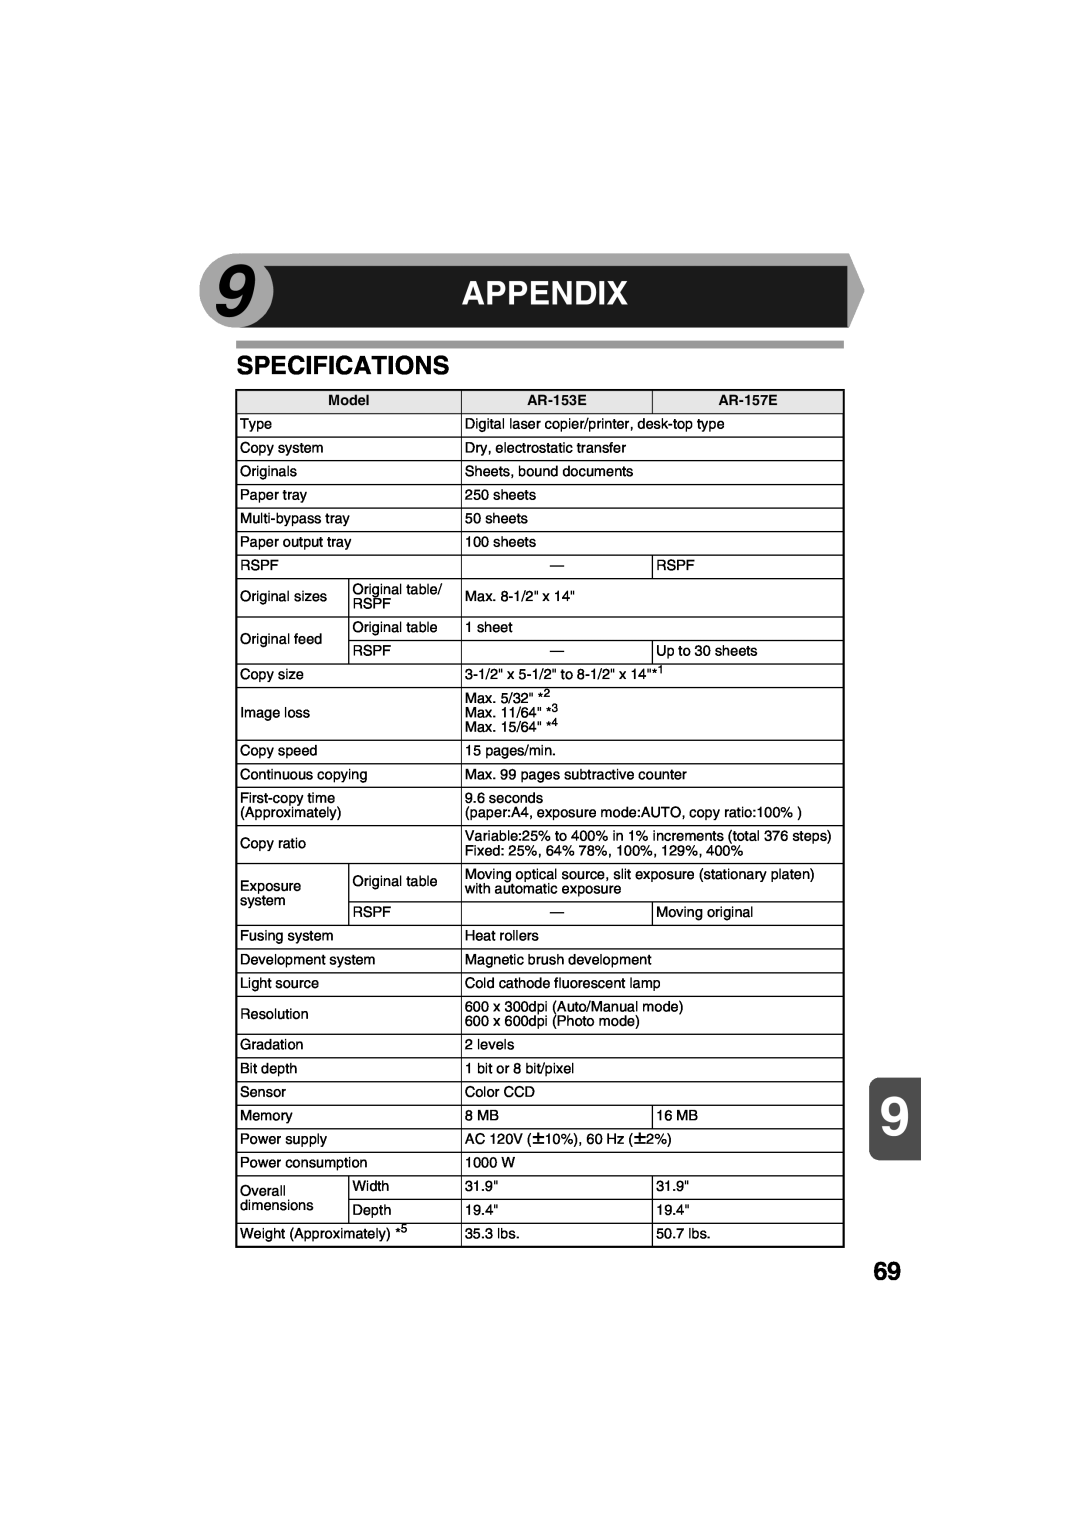 Sharp AR-157E, AR-153E operation manual Appendix, Specifications 